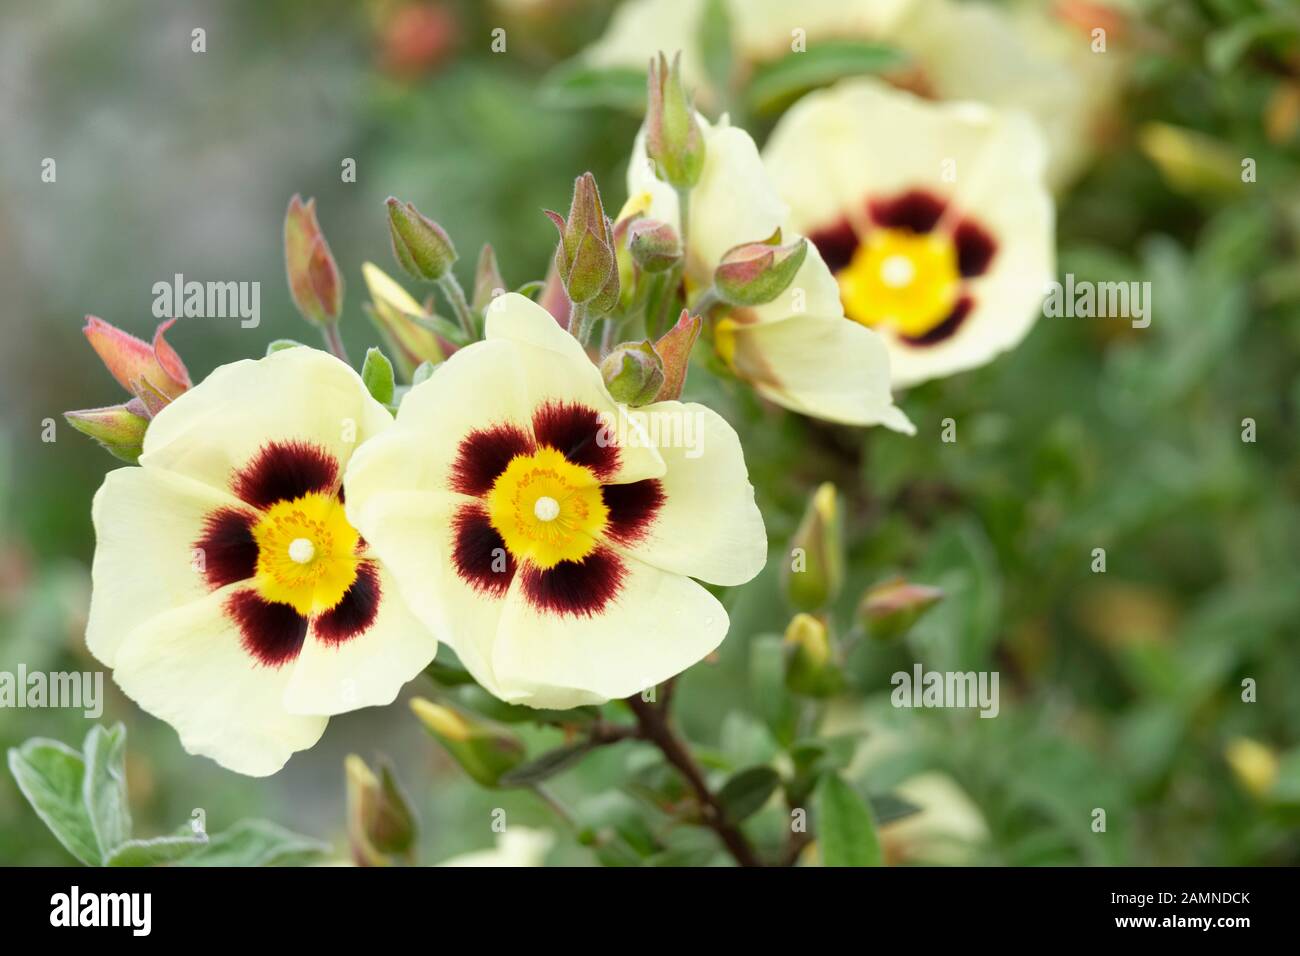 Cremige hellgelben Blüten von halimiocistus Wintonensis bin errist Holz Cream', Rock Rose bin errist Holz Cream' Stockfoto